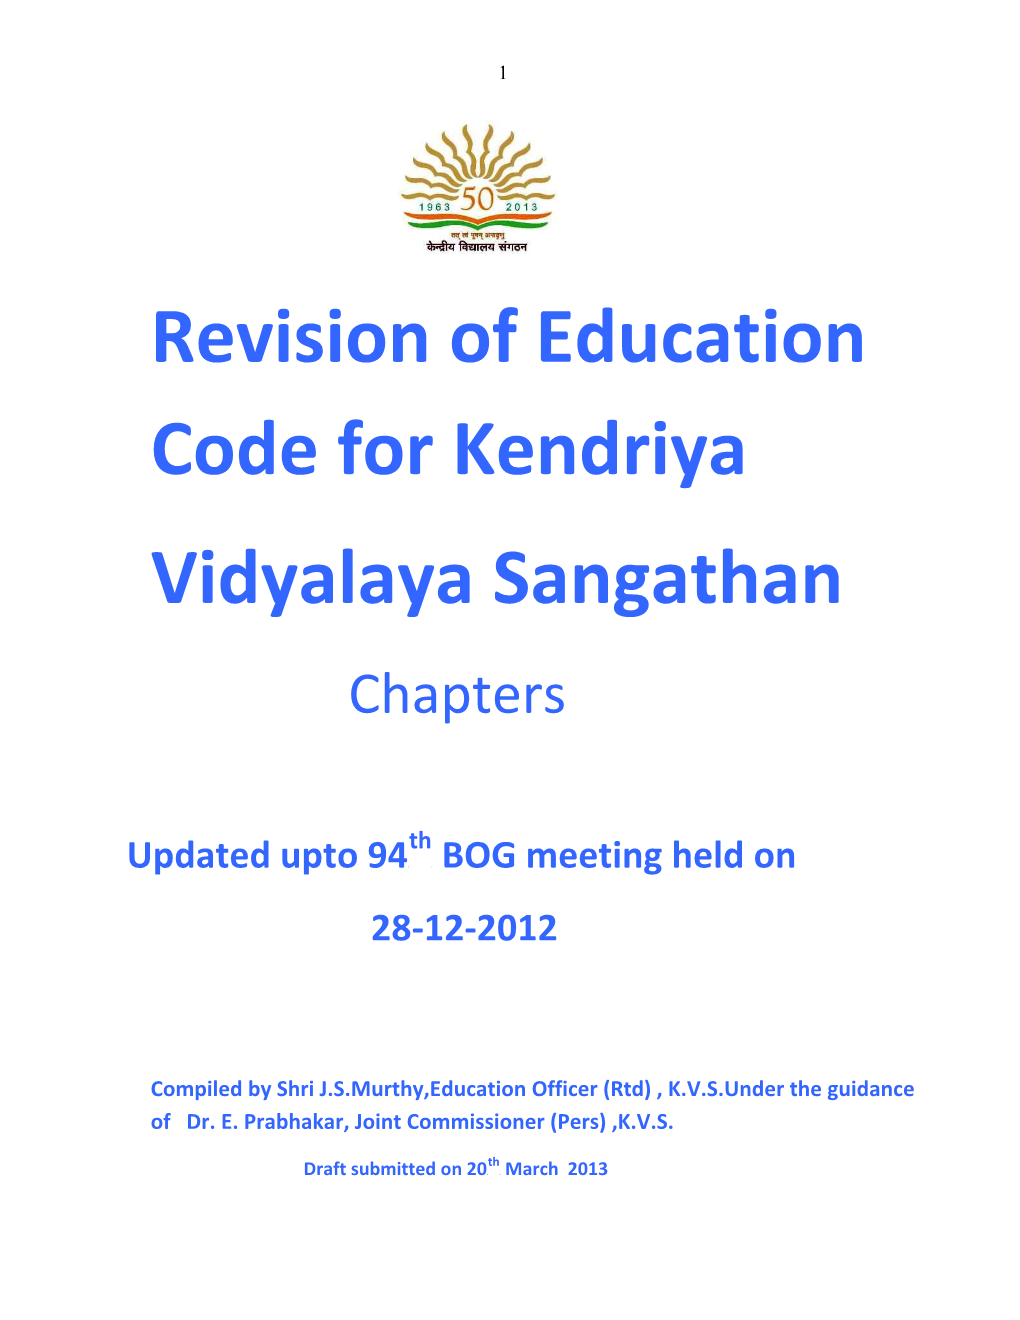 Revision of Education Code for Kendriya Vidyalaya Sangathan Chapters